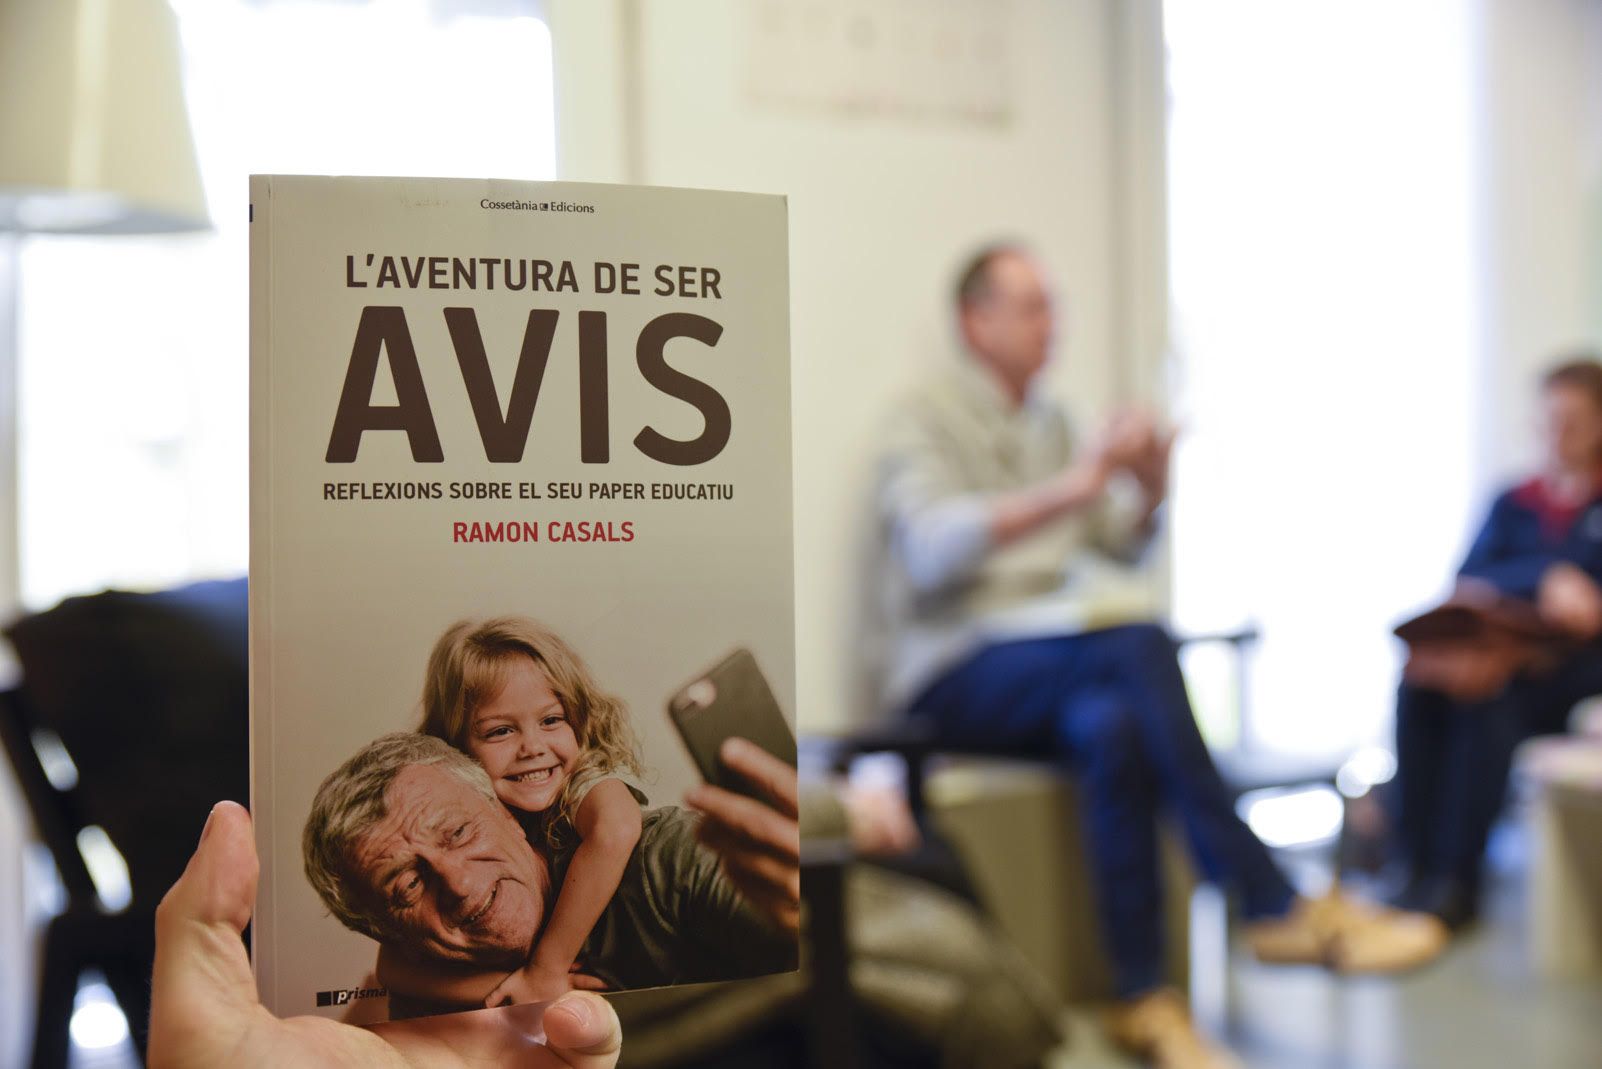 Presentació del llibre "L'aventura de ser avis". Foto: Bernat Millet.